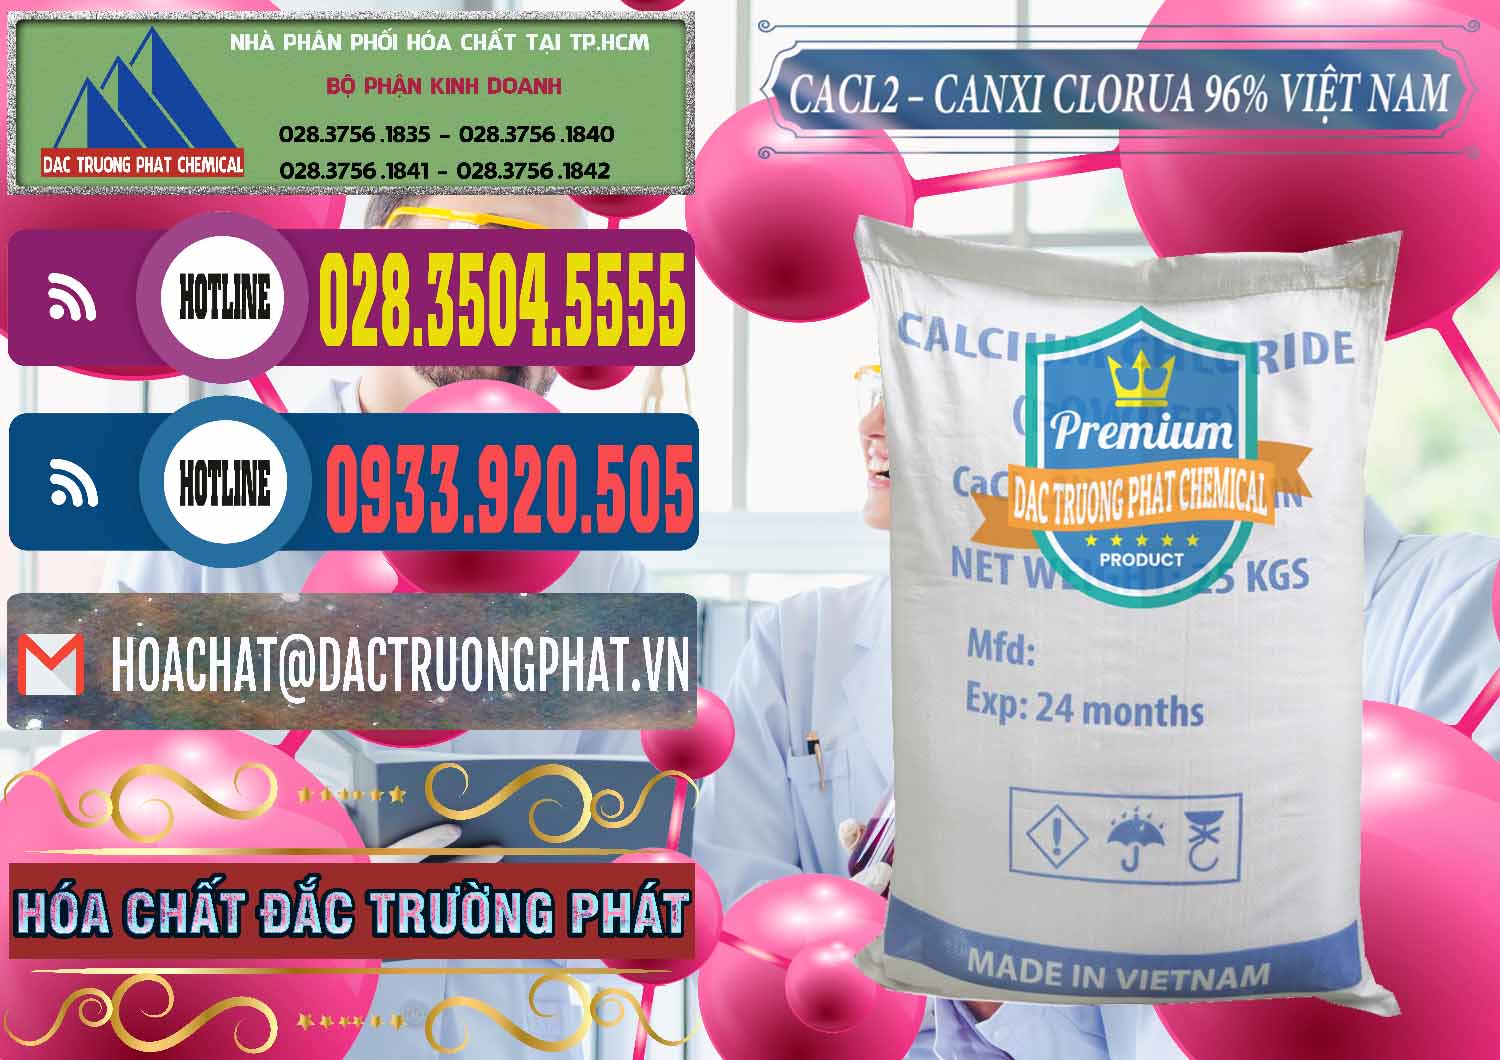 Công ty chuyên cung cấp ( bán ) CaCl2 – Canxi Clorua 96% Việt Nam - 0236 - Nơi cung cấp ( bán ) hóa chất tại TP.HCM - muabanhoachat.com.vn